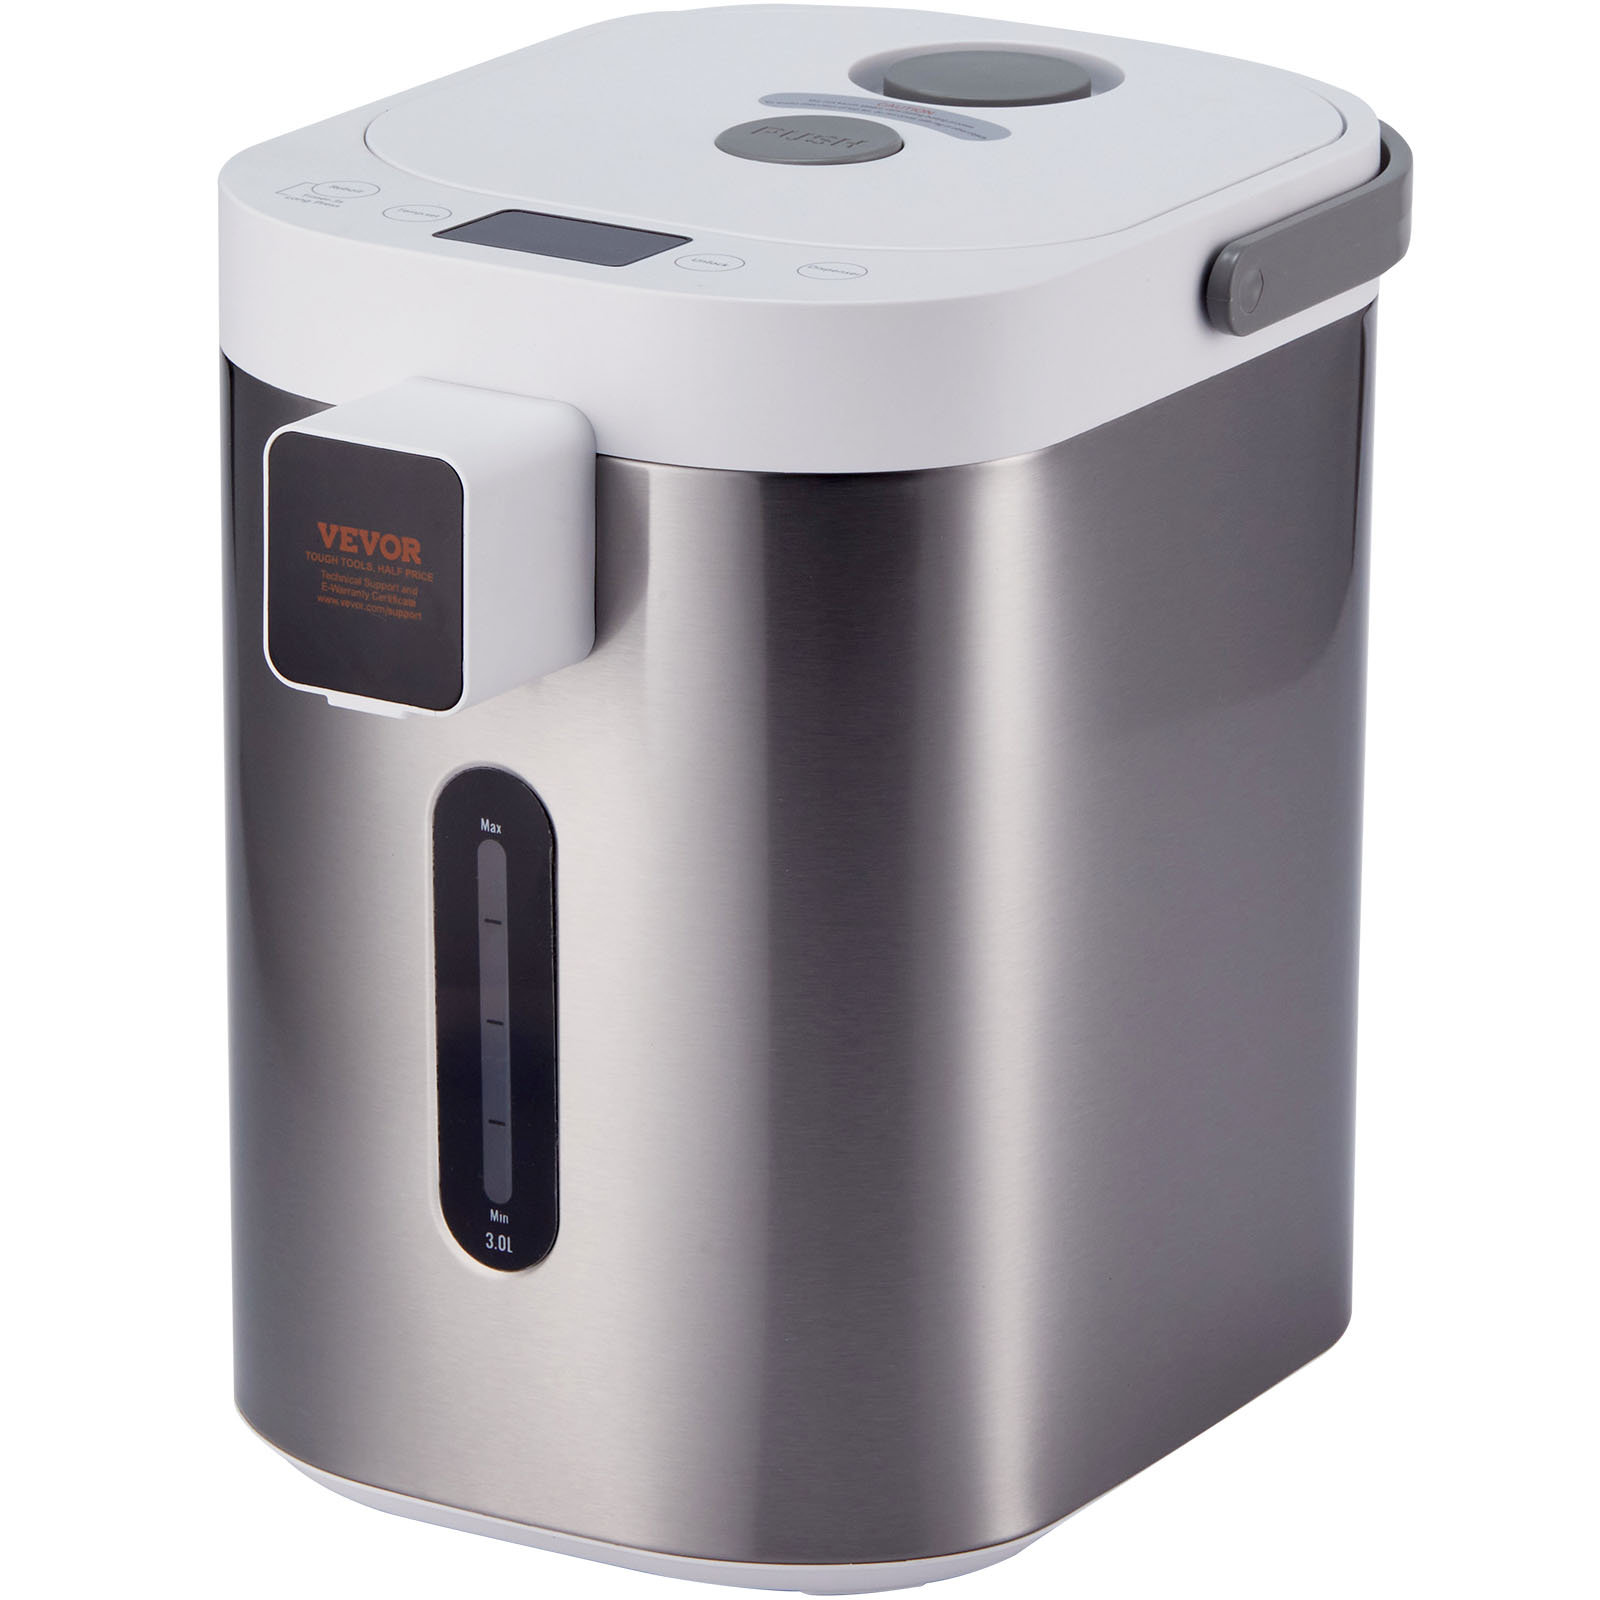 https://assets.wfcdn.com/im/19377039/compr-r85/2592/259287060/vevor-32-quarts-stainless-steel-electric-tea-kettle.jpg